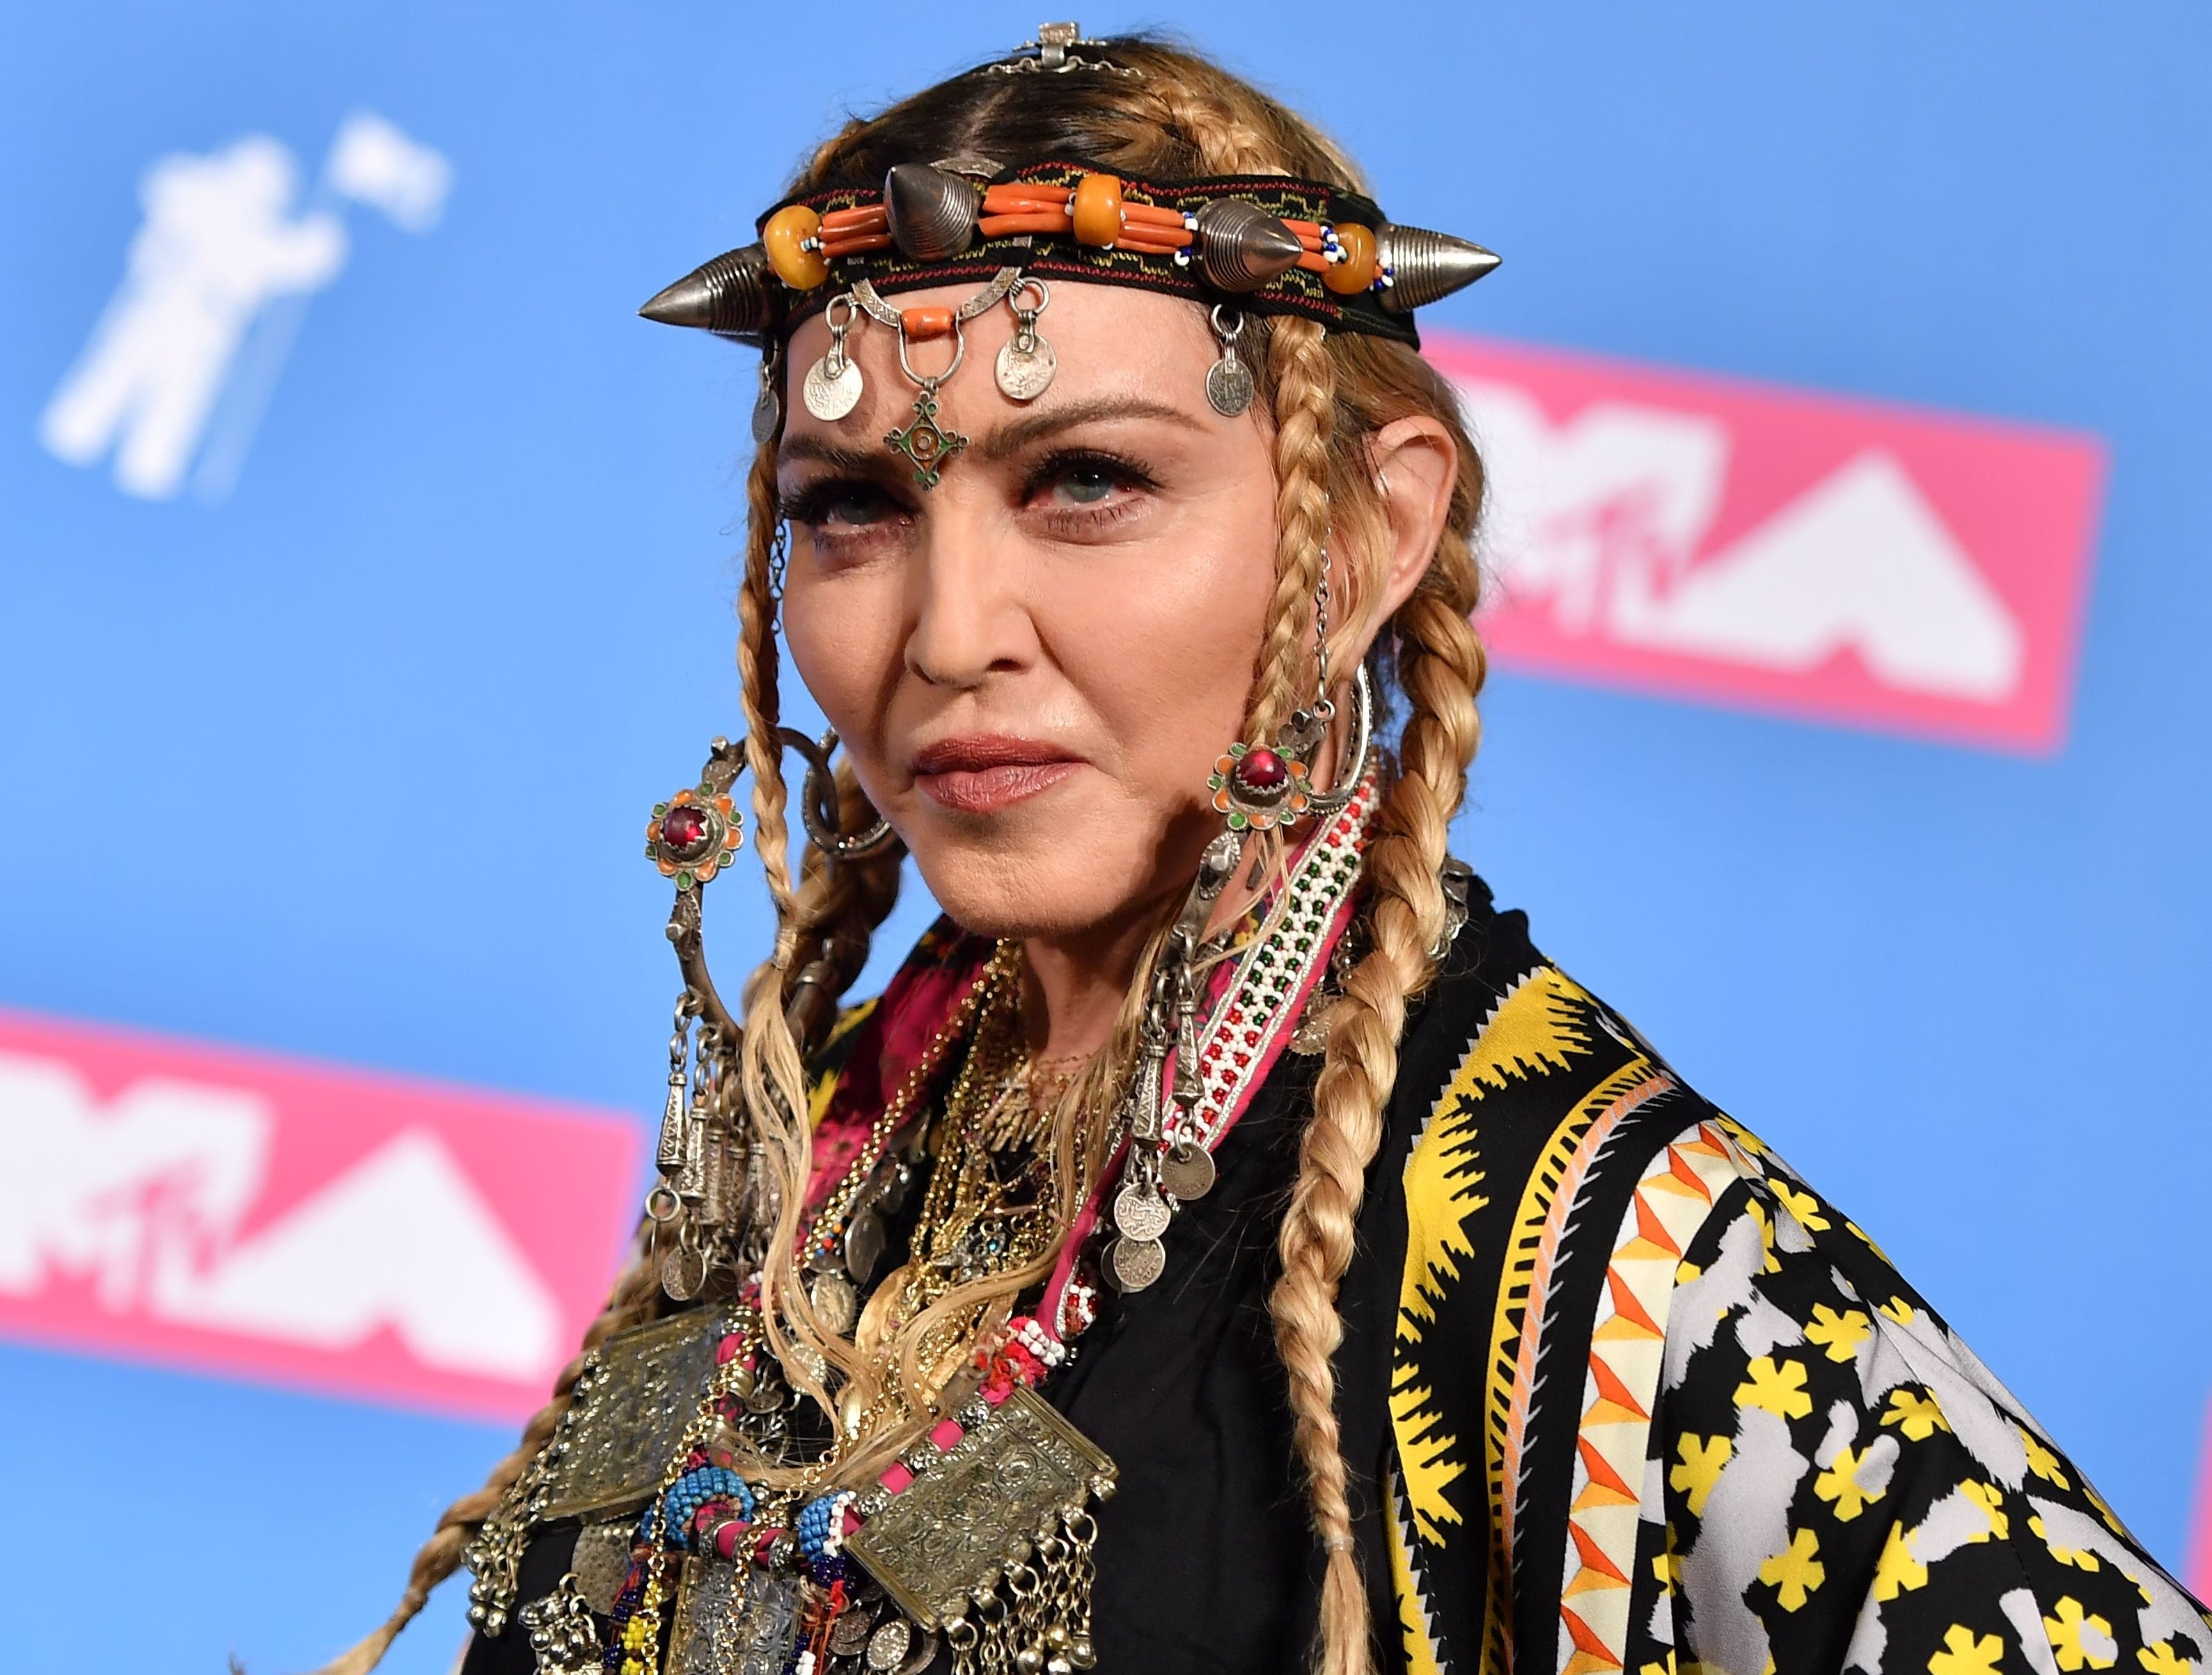 A closeup of Madonna